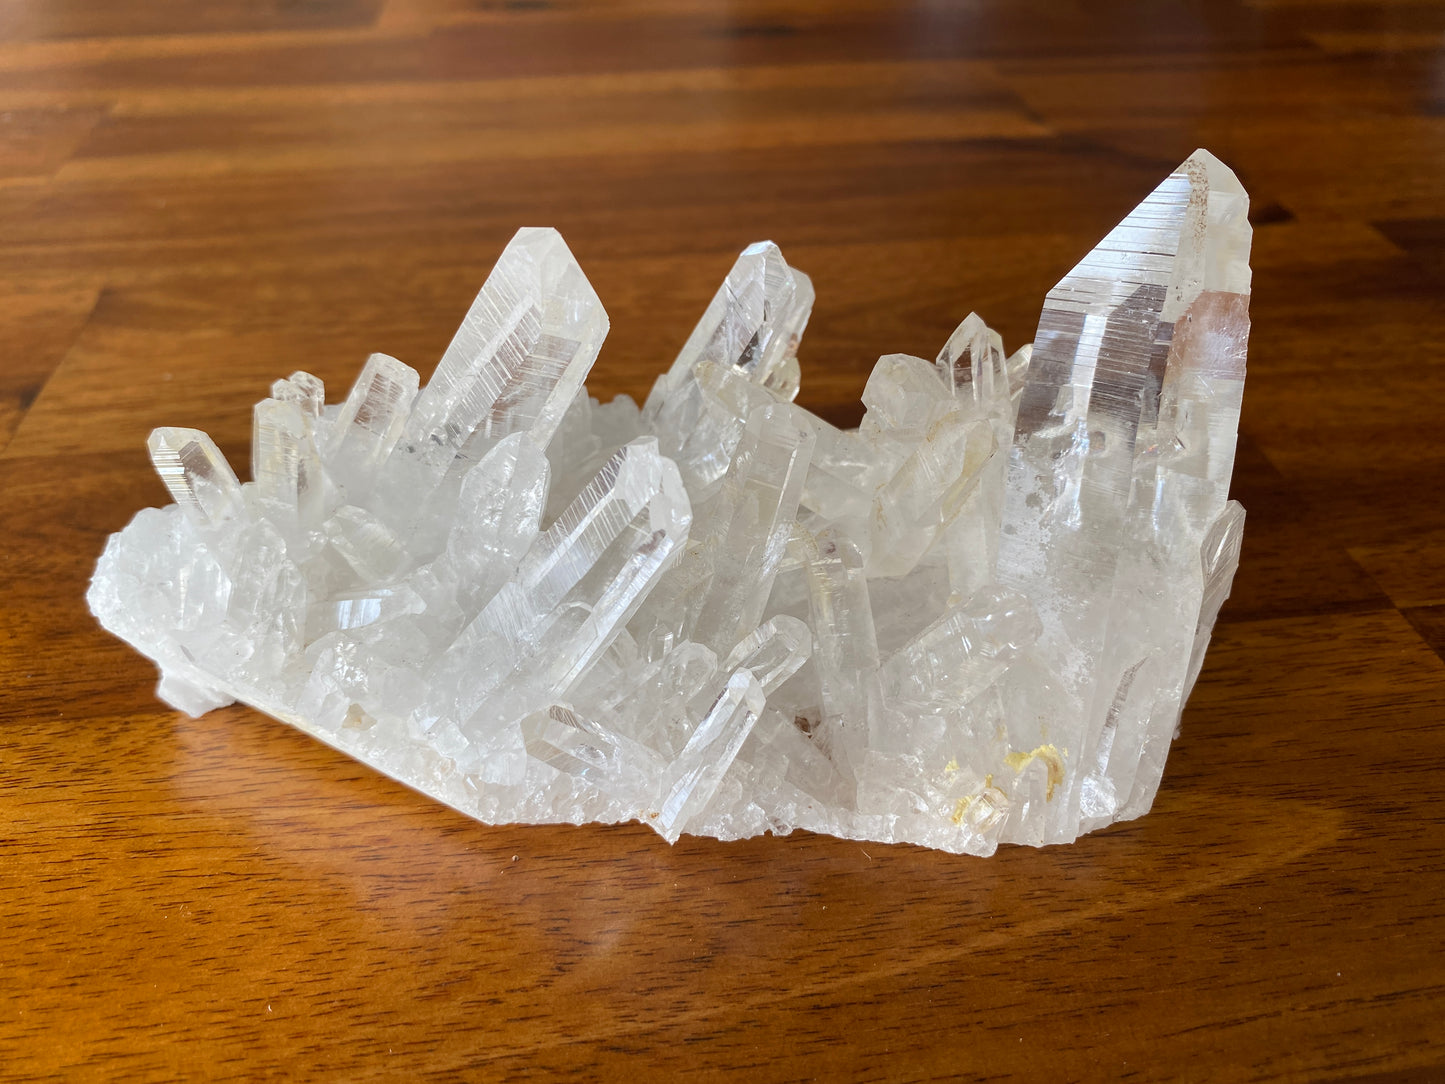 Quartz crystal cluster, Santander, Columbia